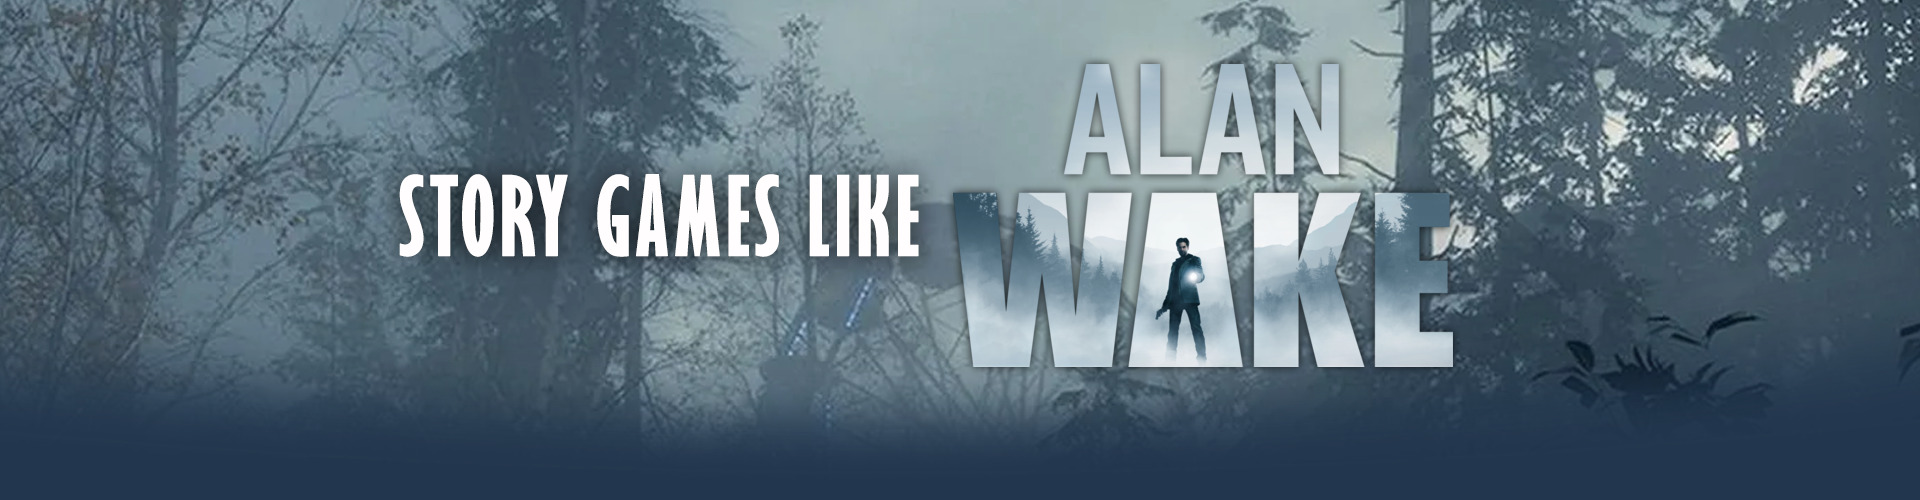 Juegos narrativos como Alan Wake